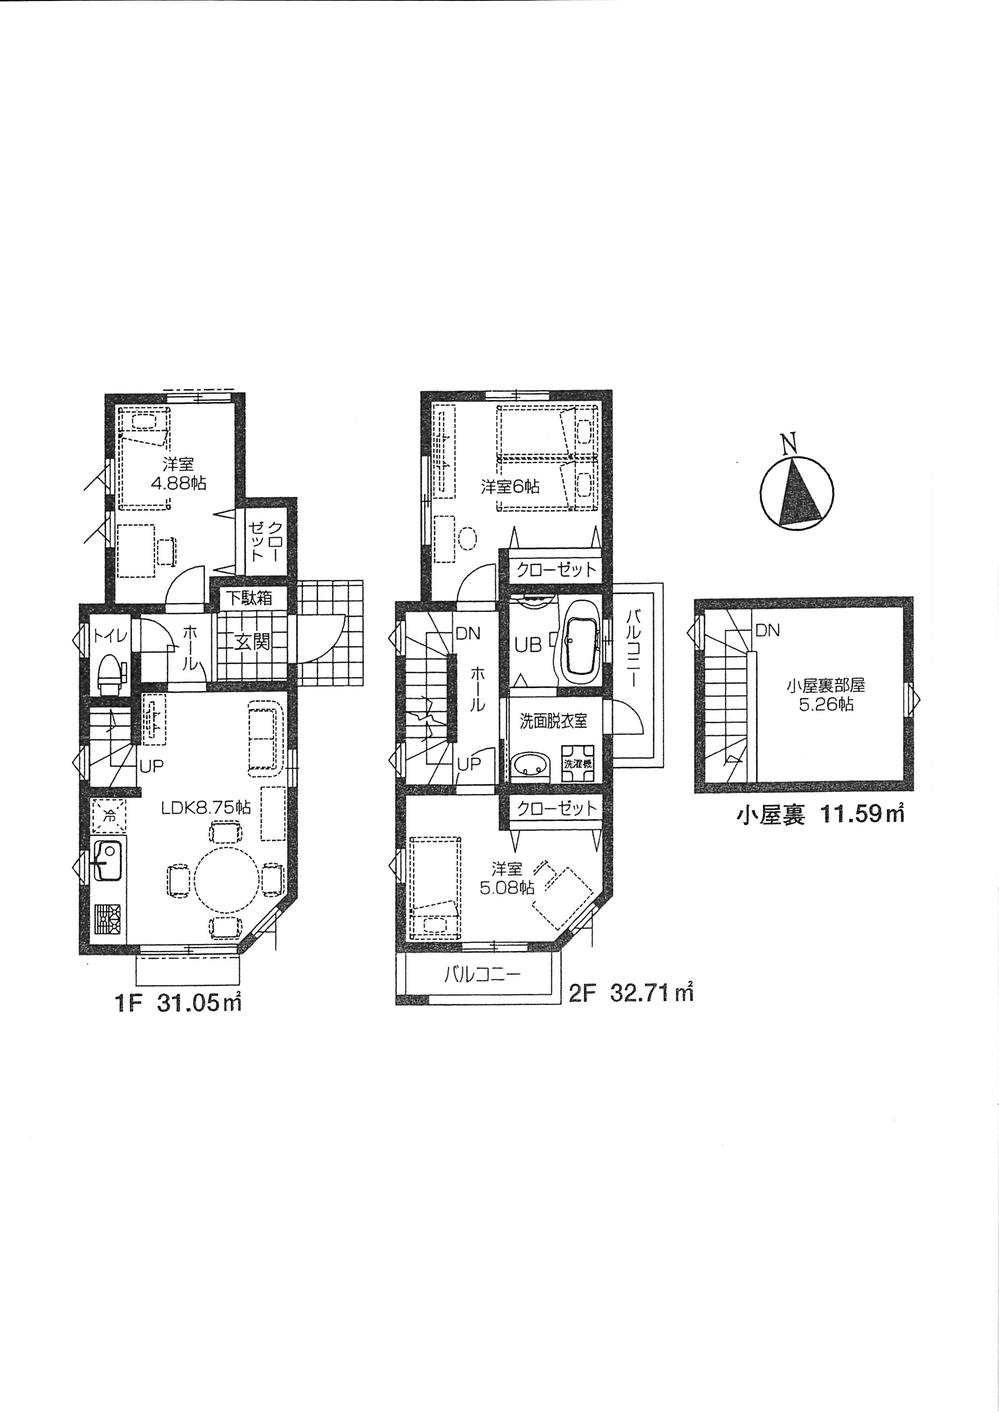 Floor plan. (A Building), Price 33,800,000 yen, 3LDK, Land area 81.93 sq m , Building area 63.76 sq m